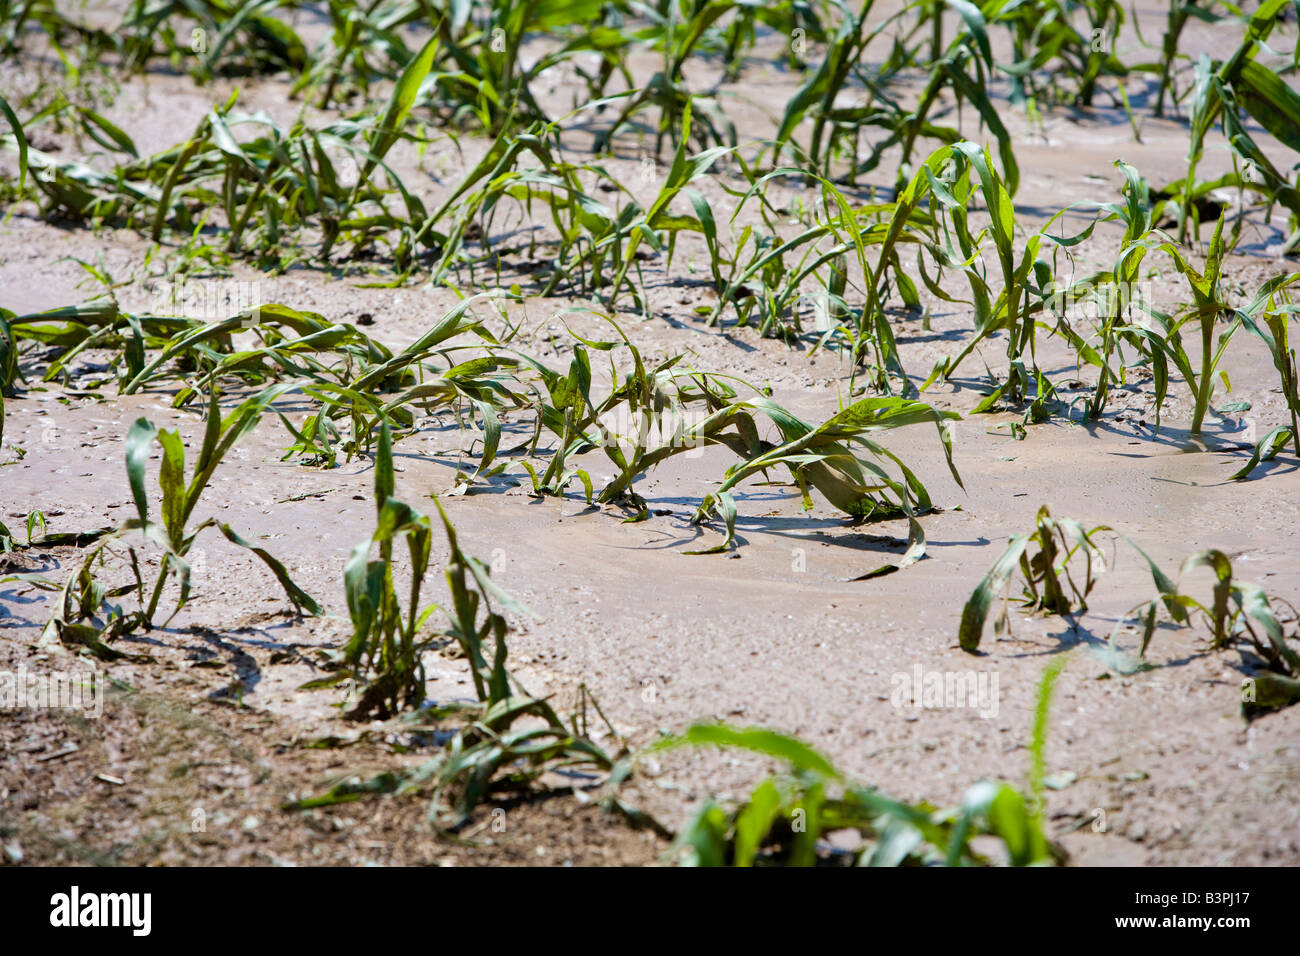 Les jeunes plants de maïs détruit par un orage, l'Allemagne, de l'Europe Banque D'Images